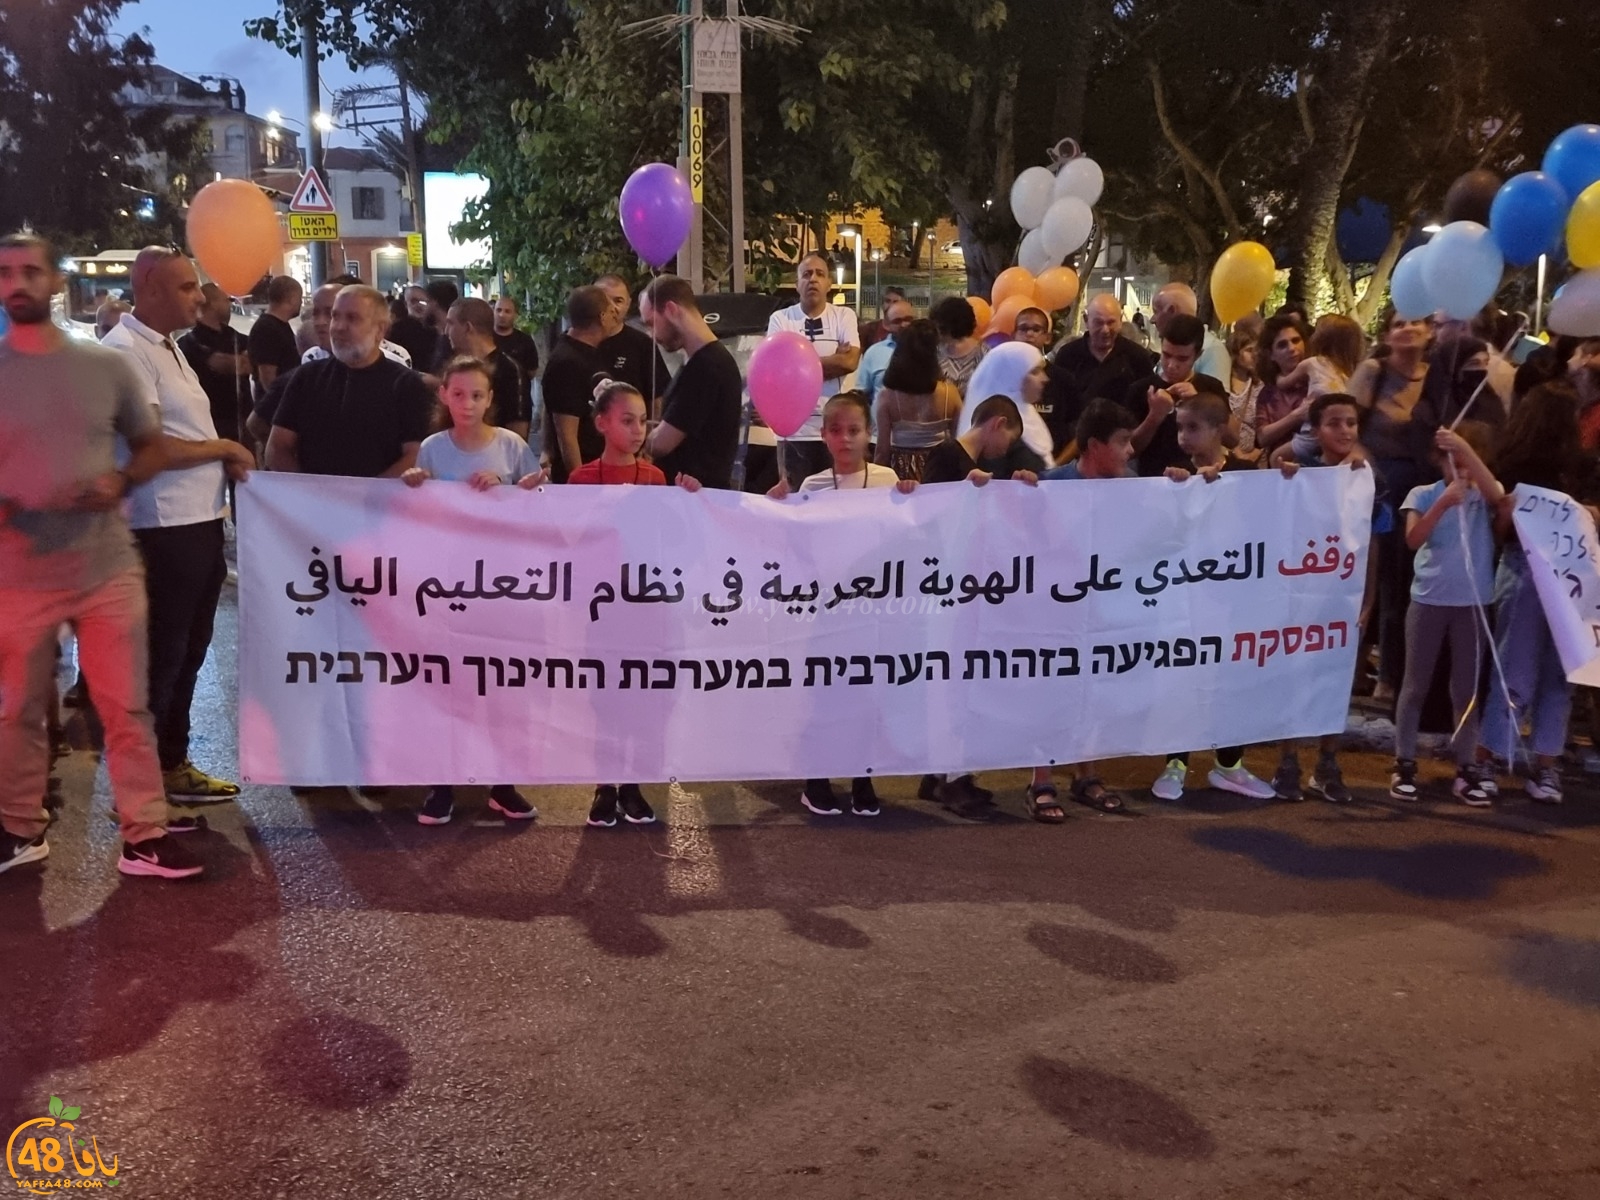 مدينة يافا تصرخ في وجه بلدية تل أبيب وسياستها تجاه ملف التعليم العربي